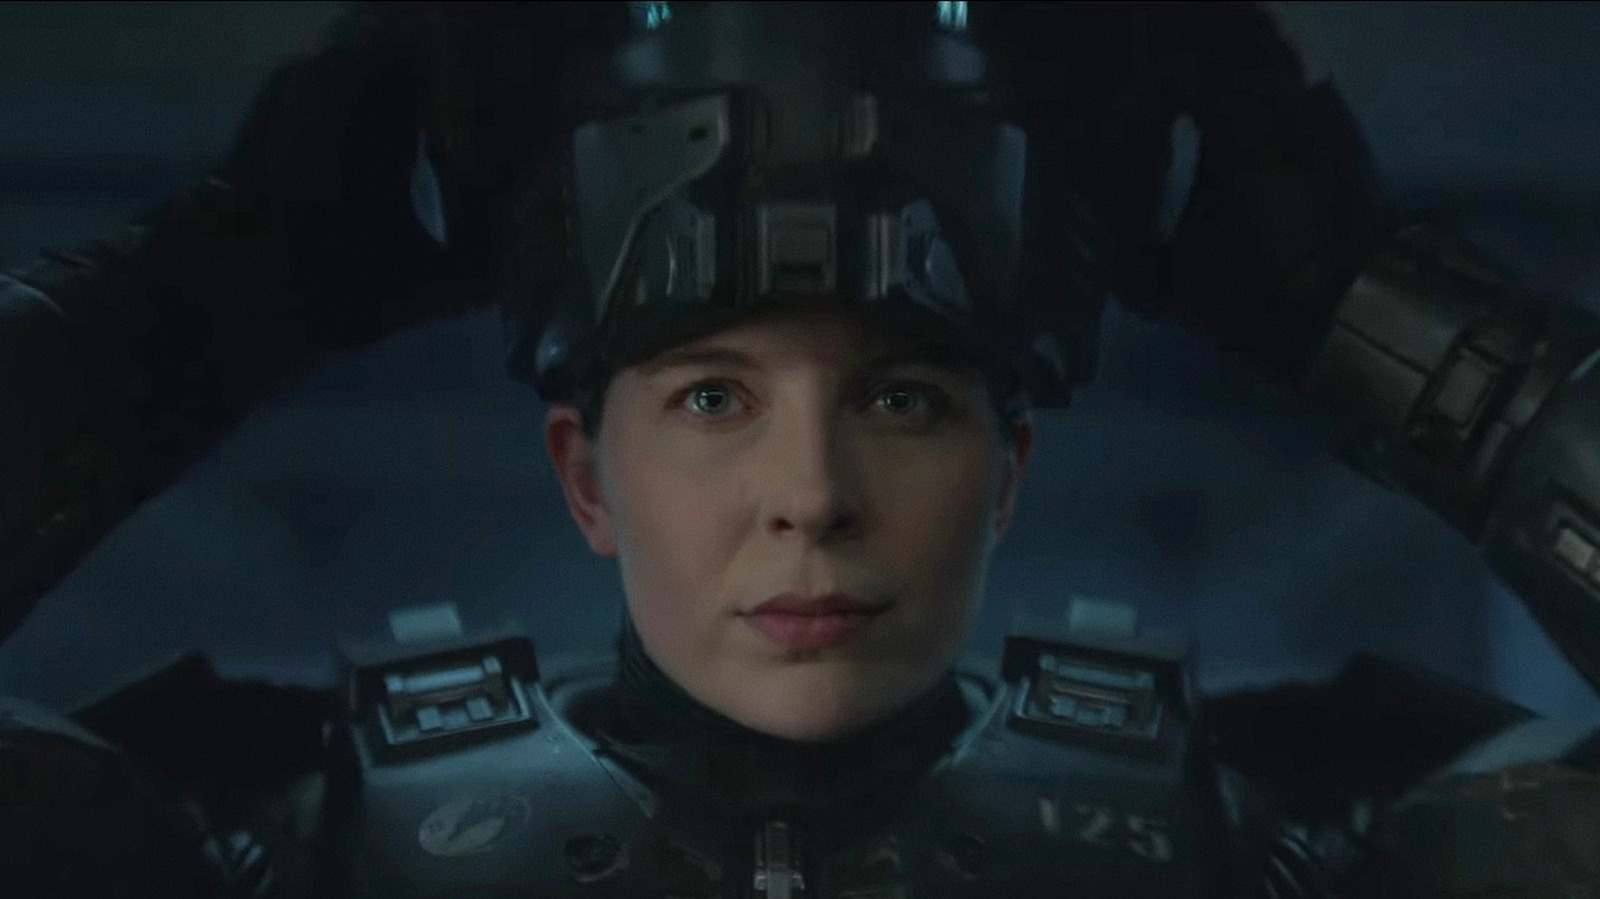 Interplanetary War Breaks Out In The Halo Season 2 Trailer